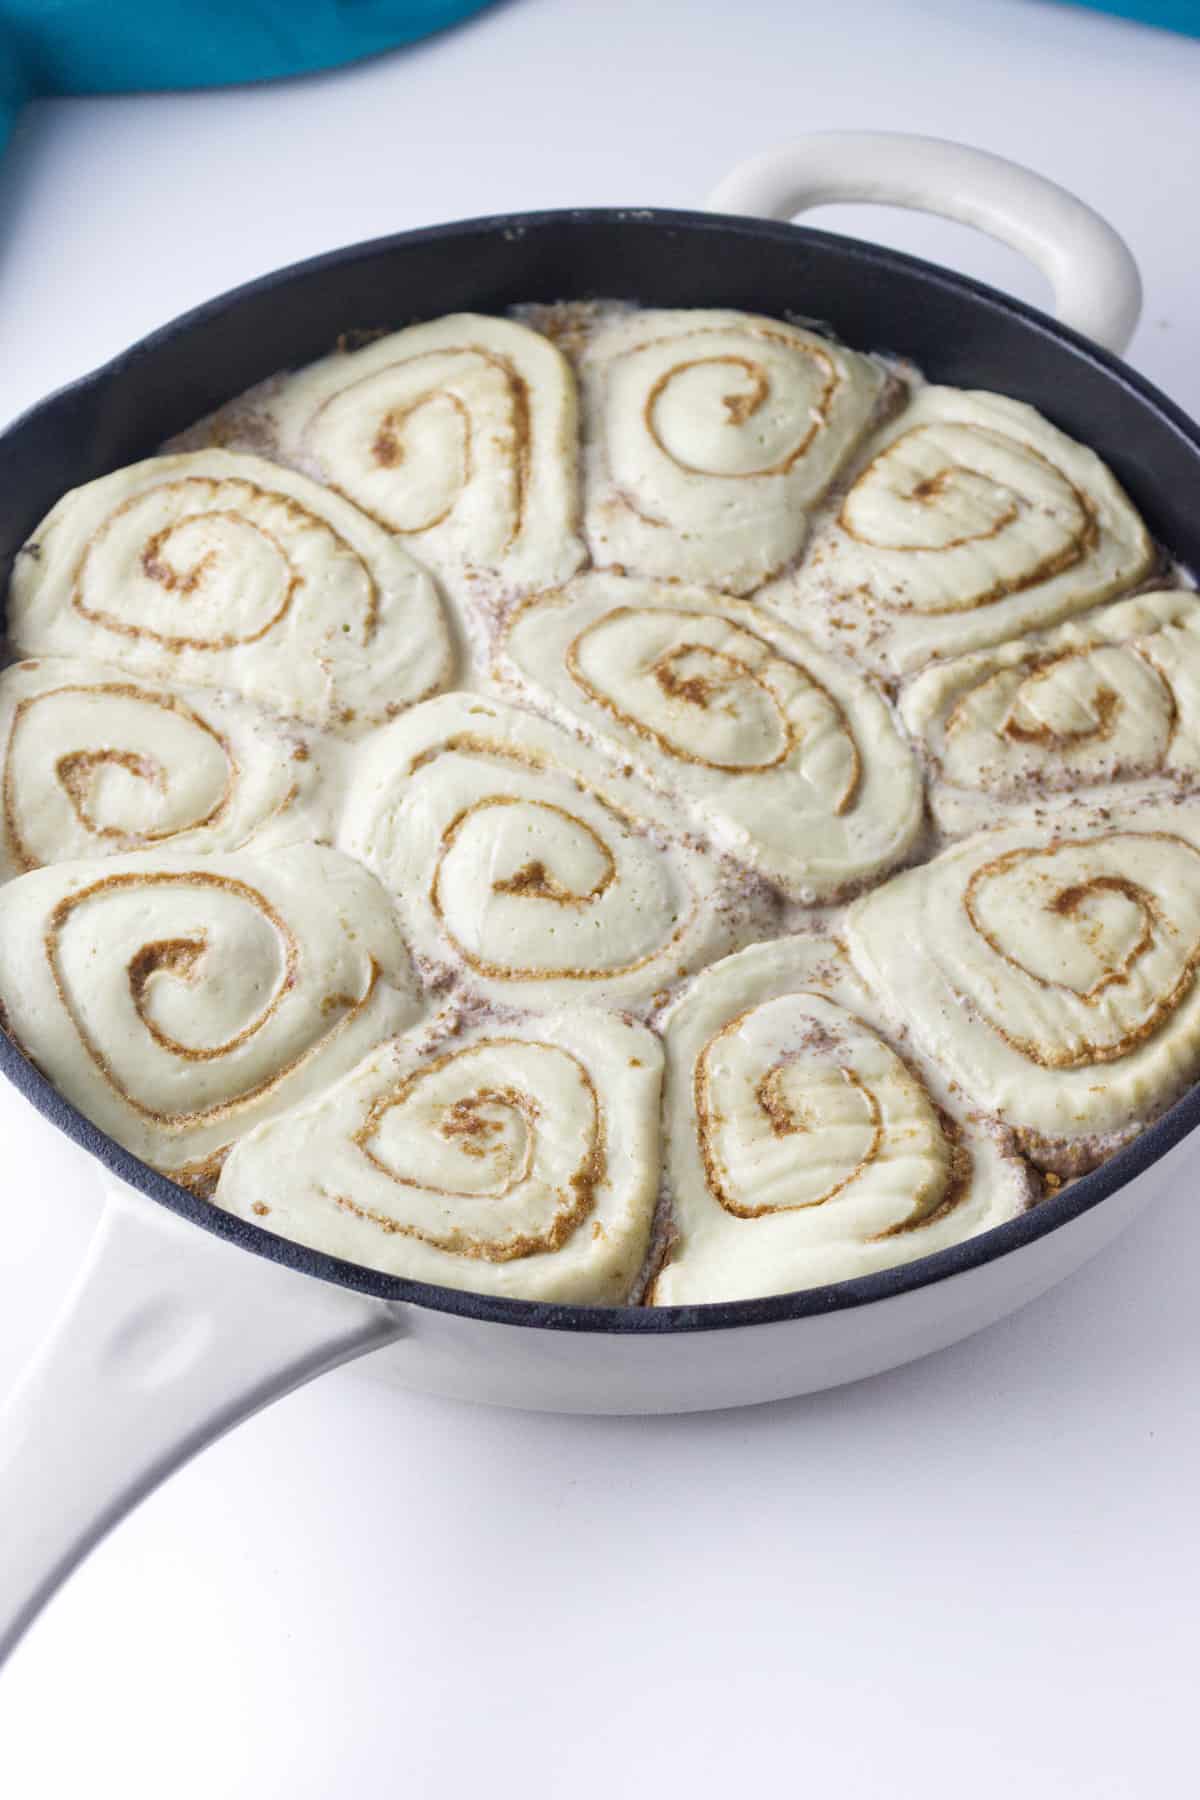 pan of risen rolls.